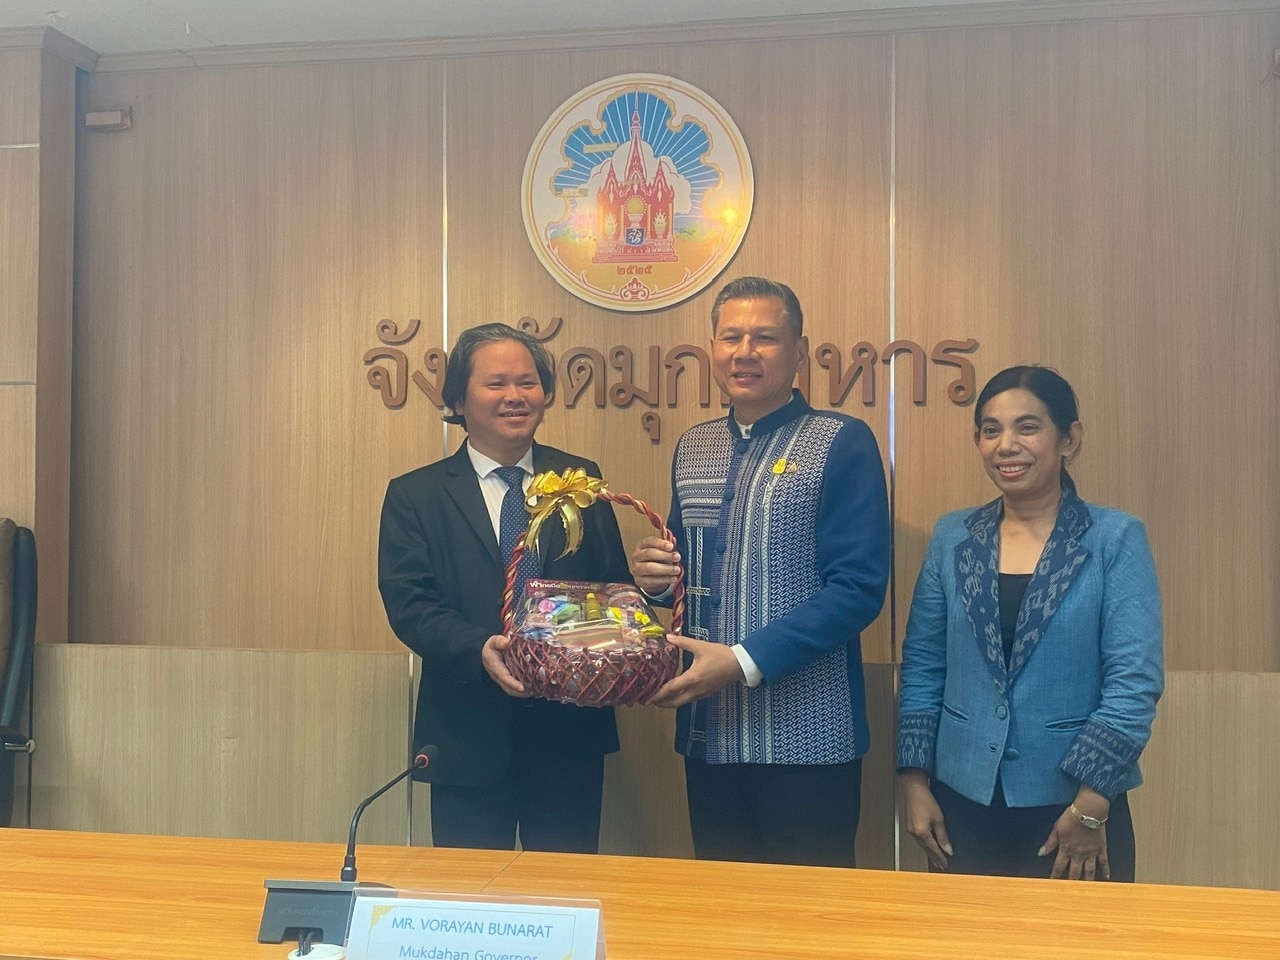 Ký kết hợp tác truyền thông giữa các cơ quan báo chí hai tỉnh Quảng Trị - Mukdahan